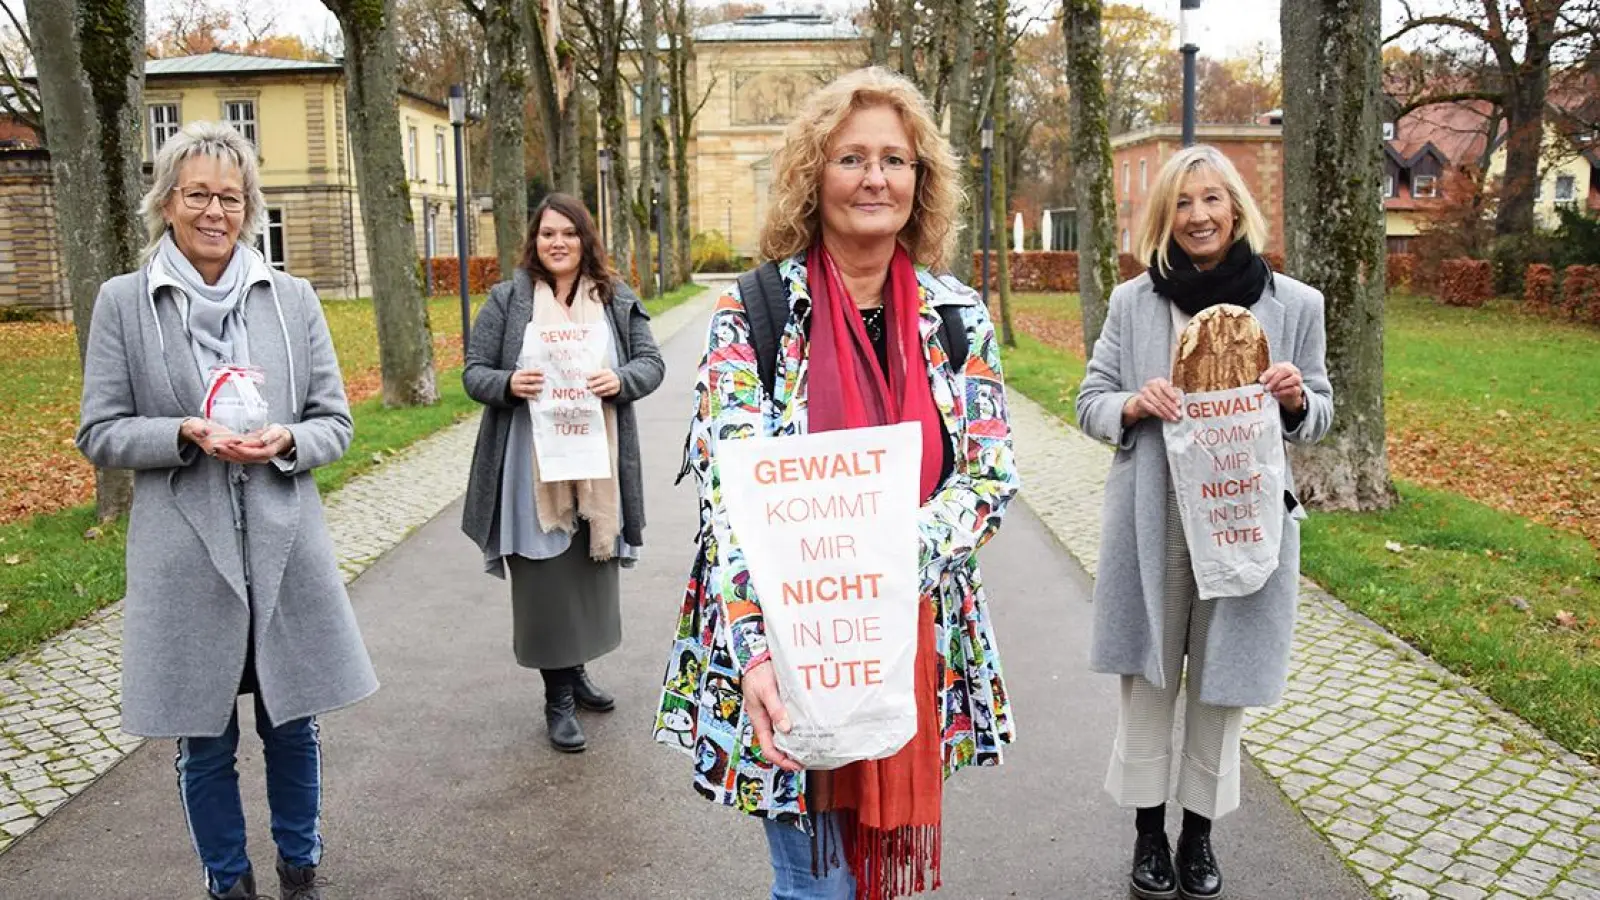 Nachrichten Bayreuth: Gewalt kommt nicht in die Tüte (Foto: Jessica Mohr)